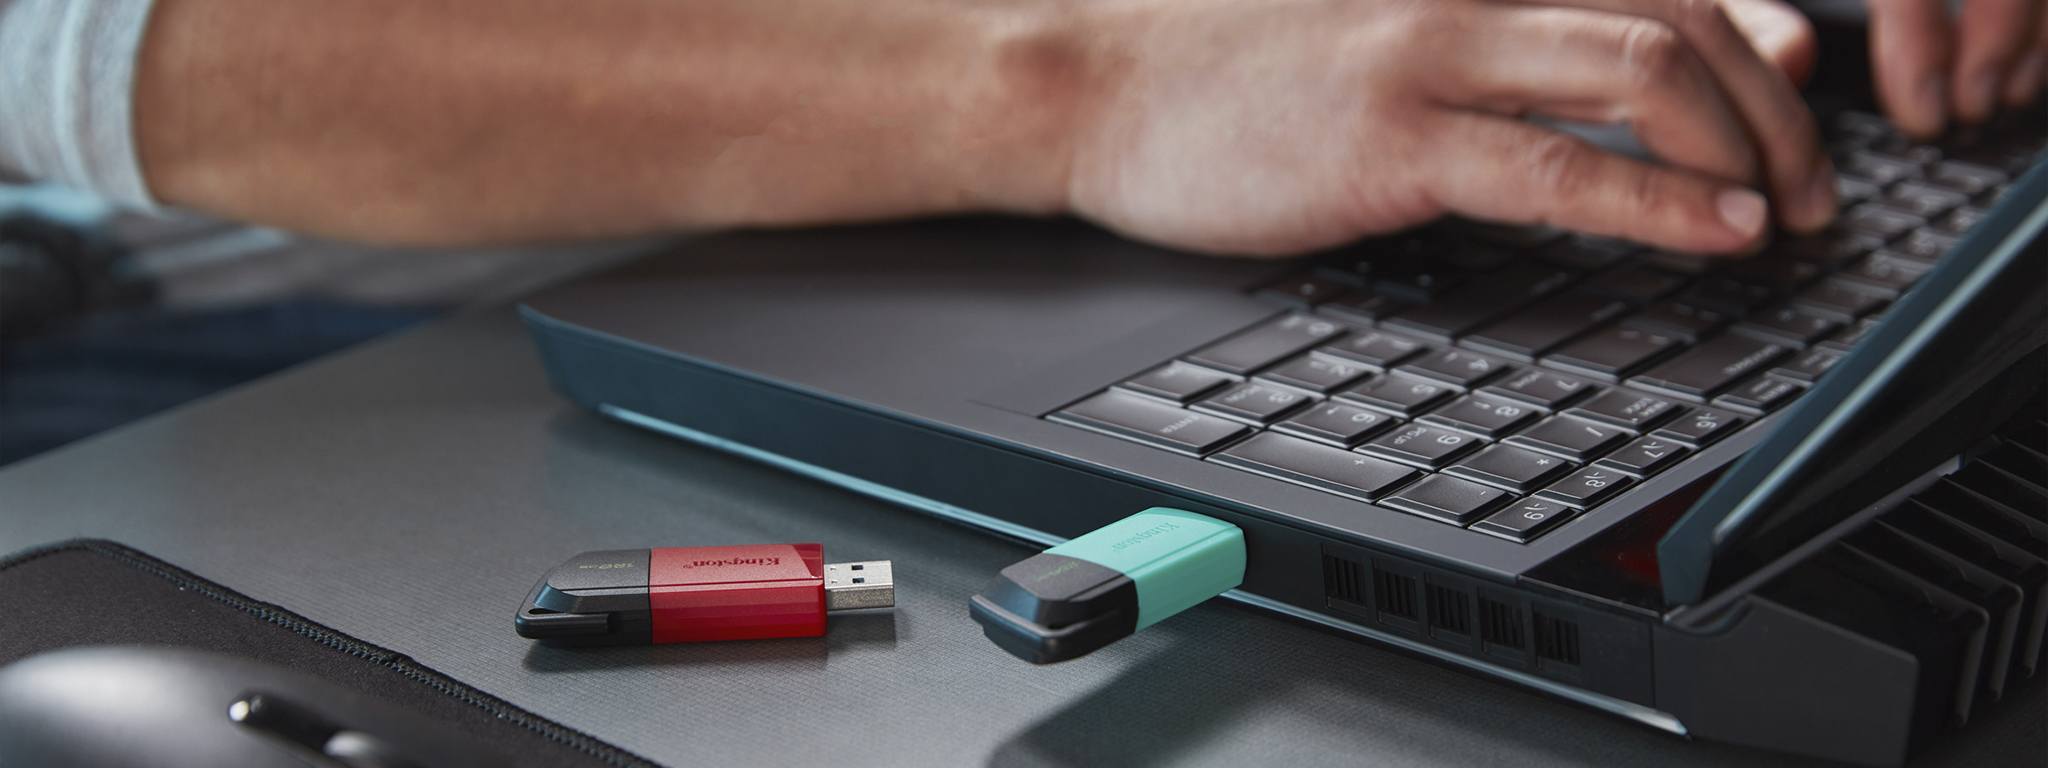 노트북을 사용하는 사람을 배경으로 녹색 캡과 빨간색 캡이 달린 두 개의 DT Exodia M USB 플래시 드라이브가 책상 가장자리에 놓여 있습니다